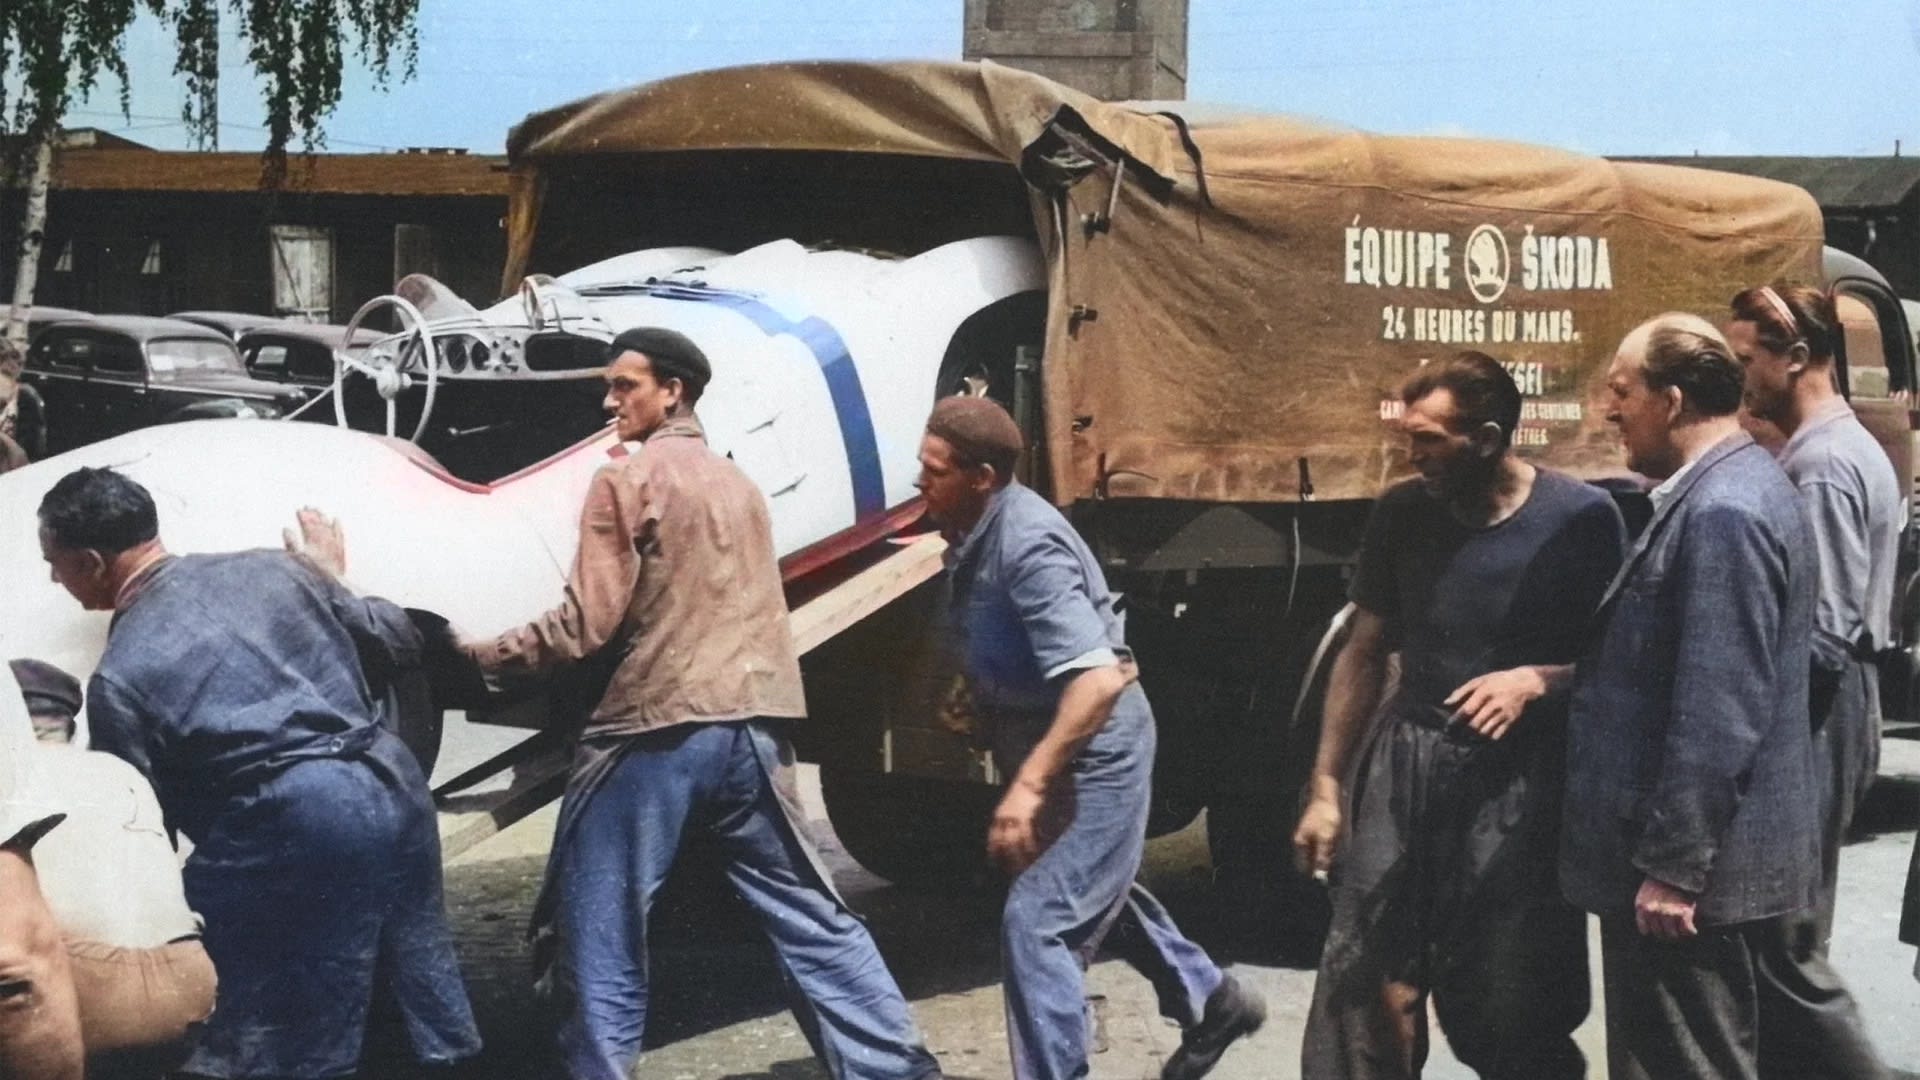 Takto vyráželi škodováci do Le Mans v dusném roce 1950.